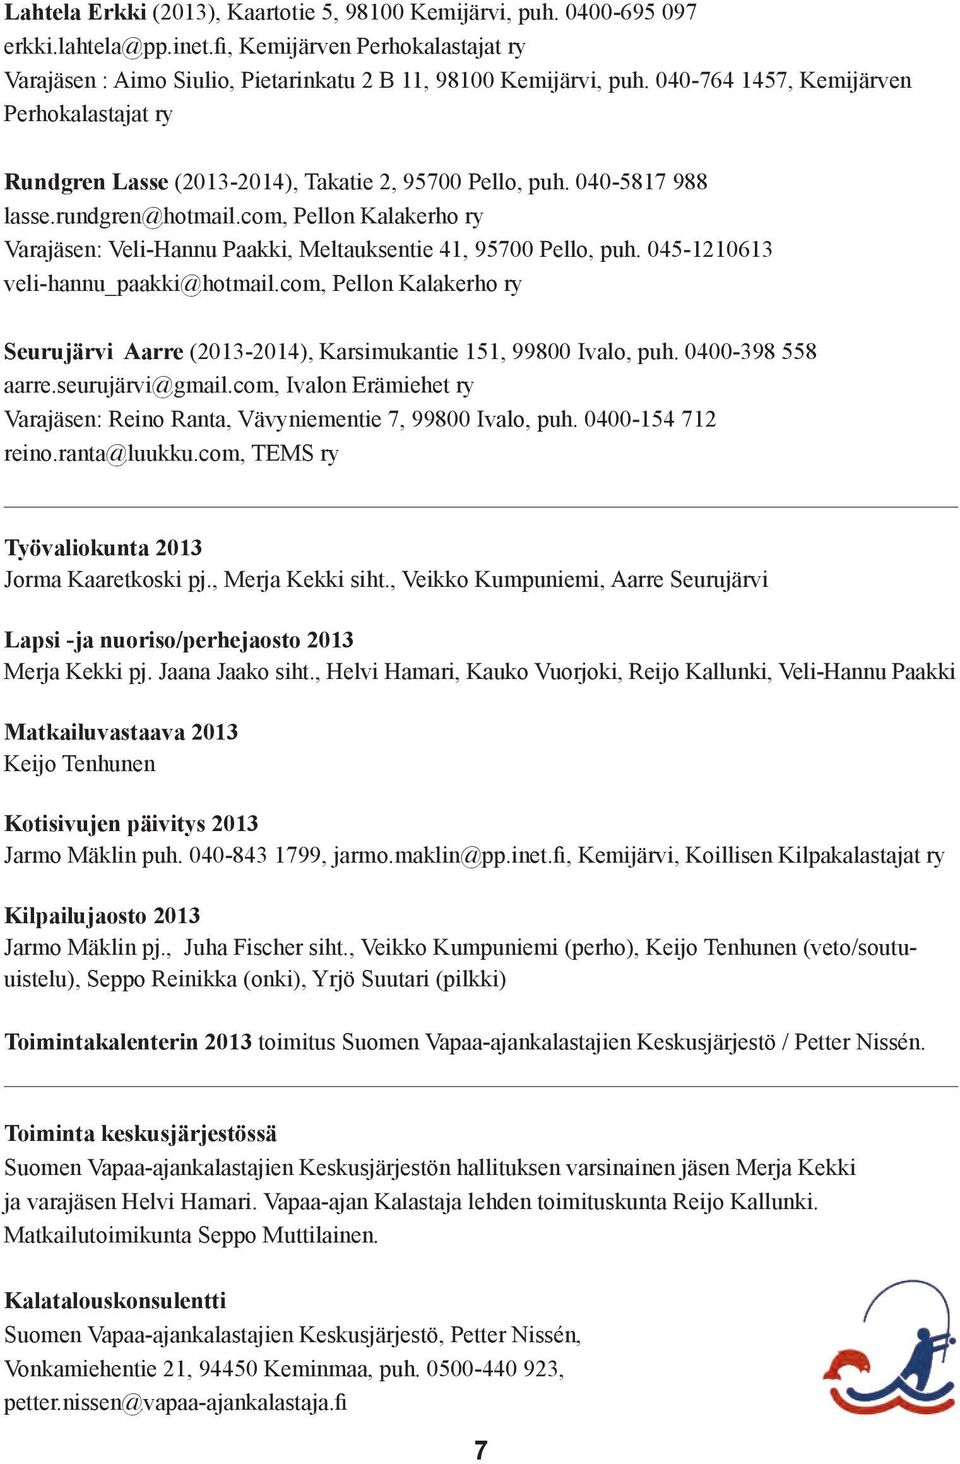 com, Pellon Kalakerho ry Varajäsen: Veli-Hannu Paakki, Meltauksentie 41, 95700 Pello, puh. 045-1210613 veli-hannu_paakki@hotmail.